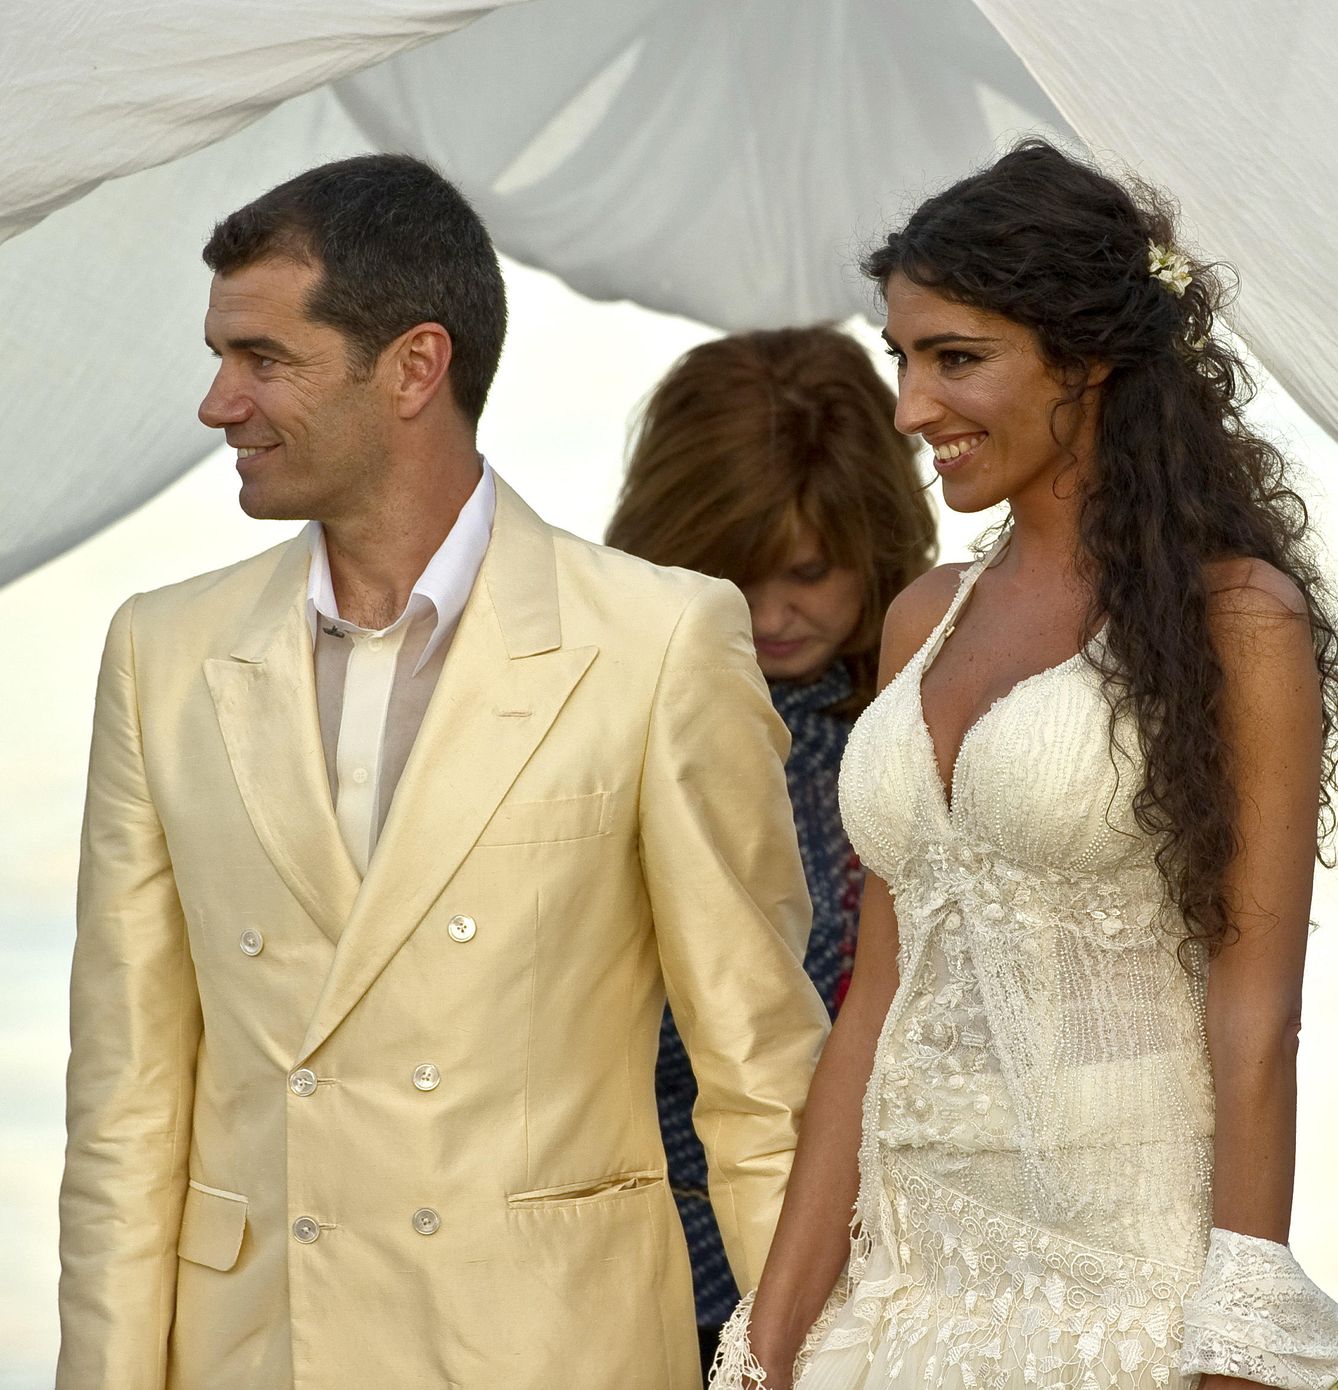 Toni Cantó e Inma Suárez el día de su boda en mayo de 2010 (Gtres)